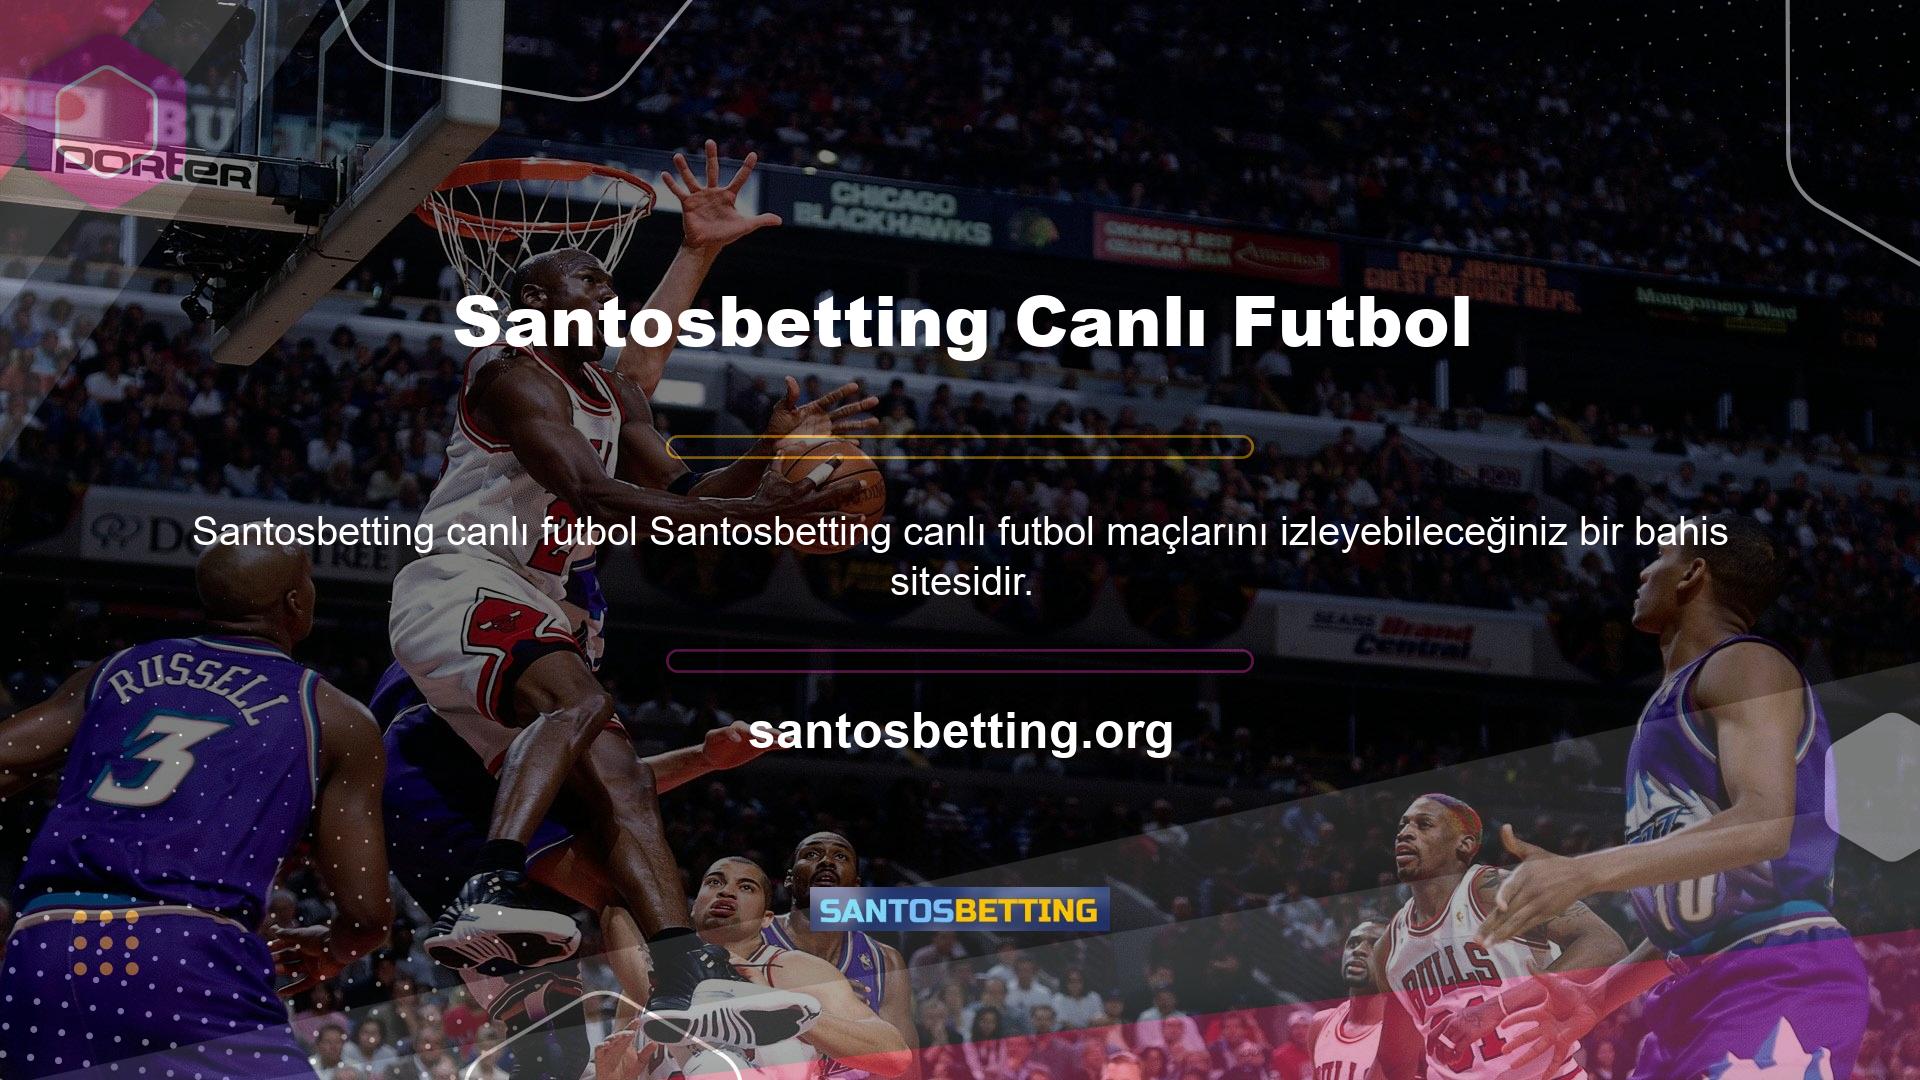 Santosbetting, dünyanın birçok ülkesinden turnuvaları izleme yeteneğine sahiptir ve kullanıcılara benzersiz bir futbol deneyimi sunar